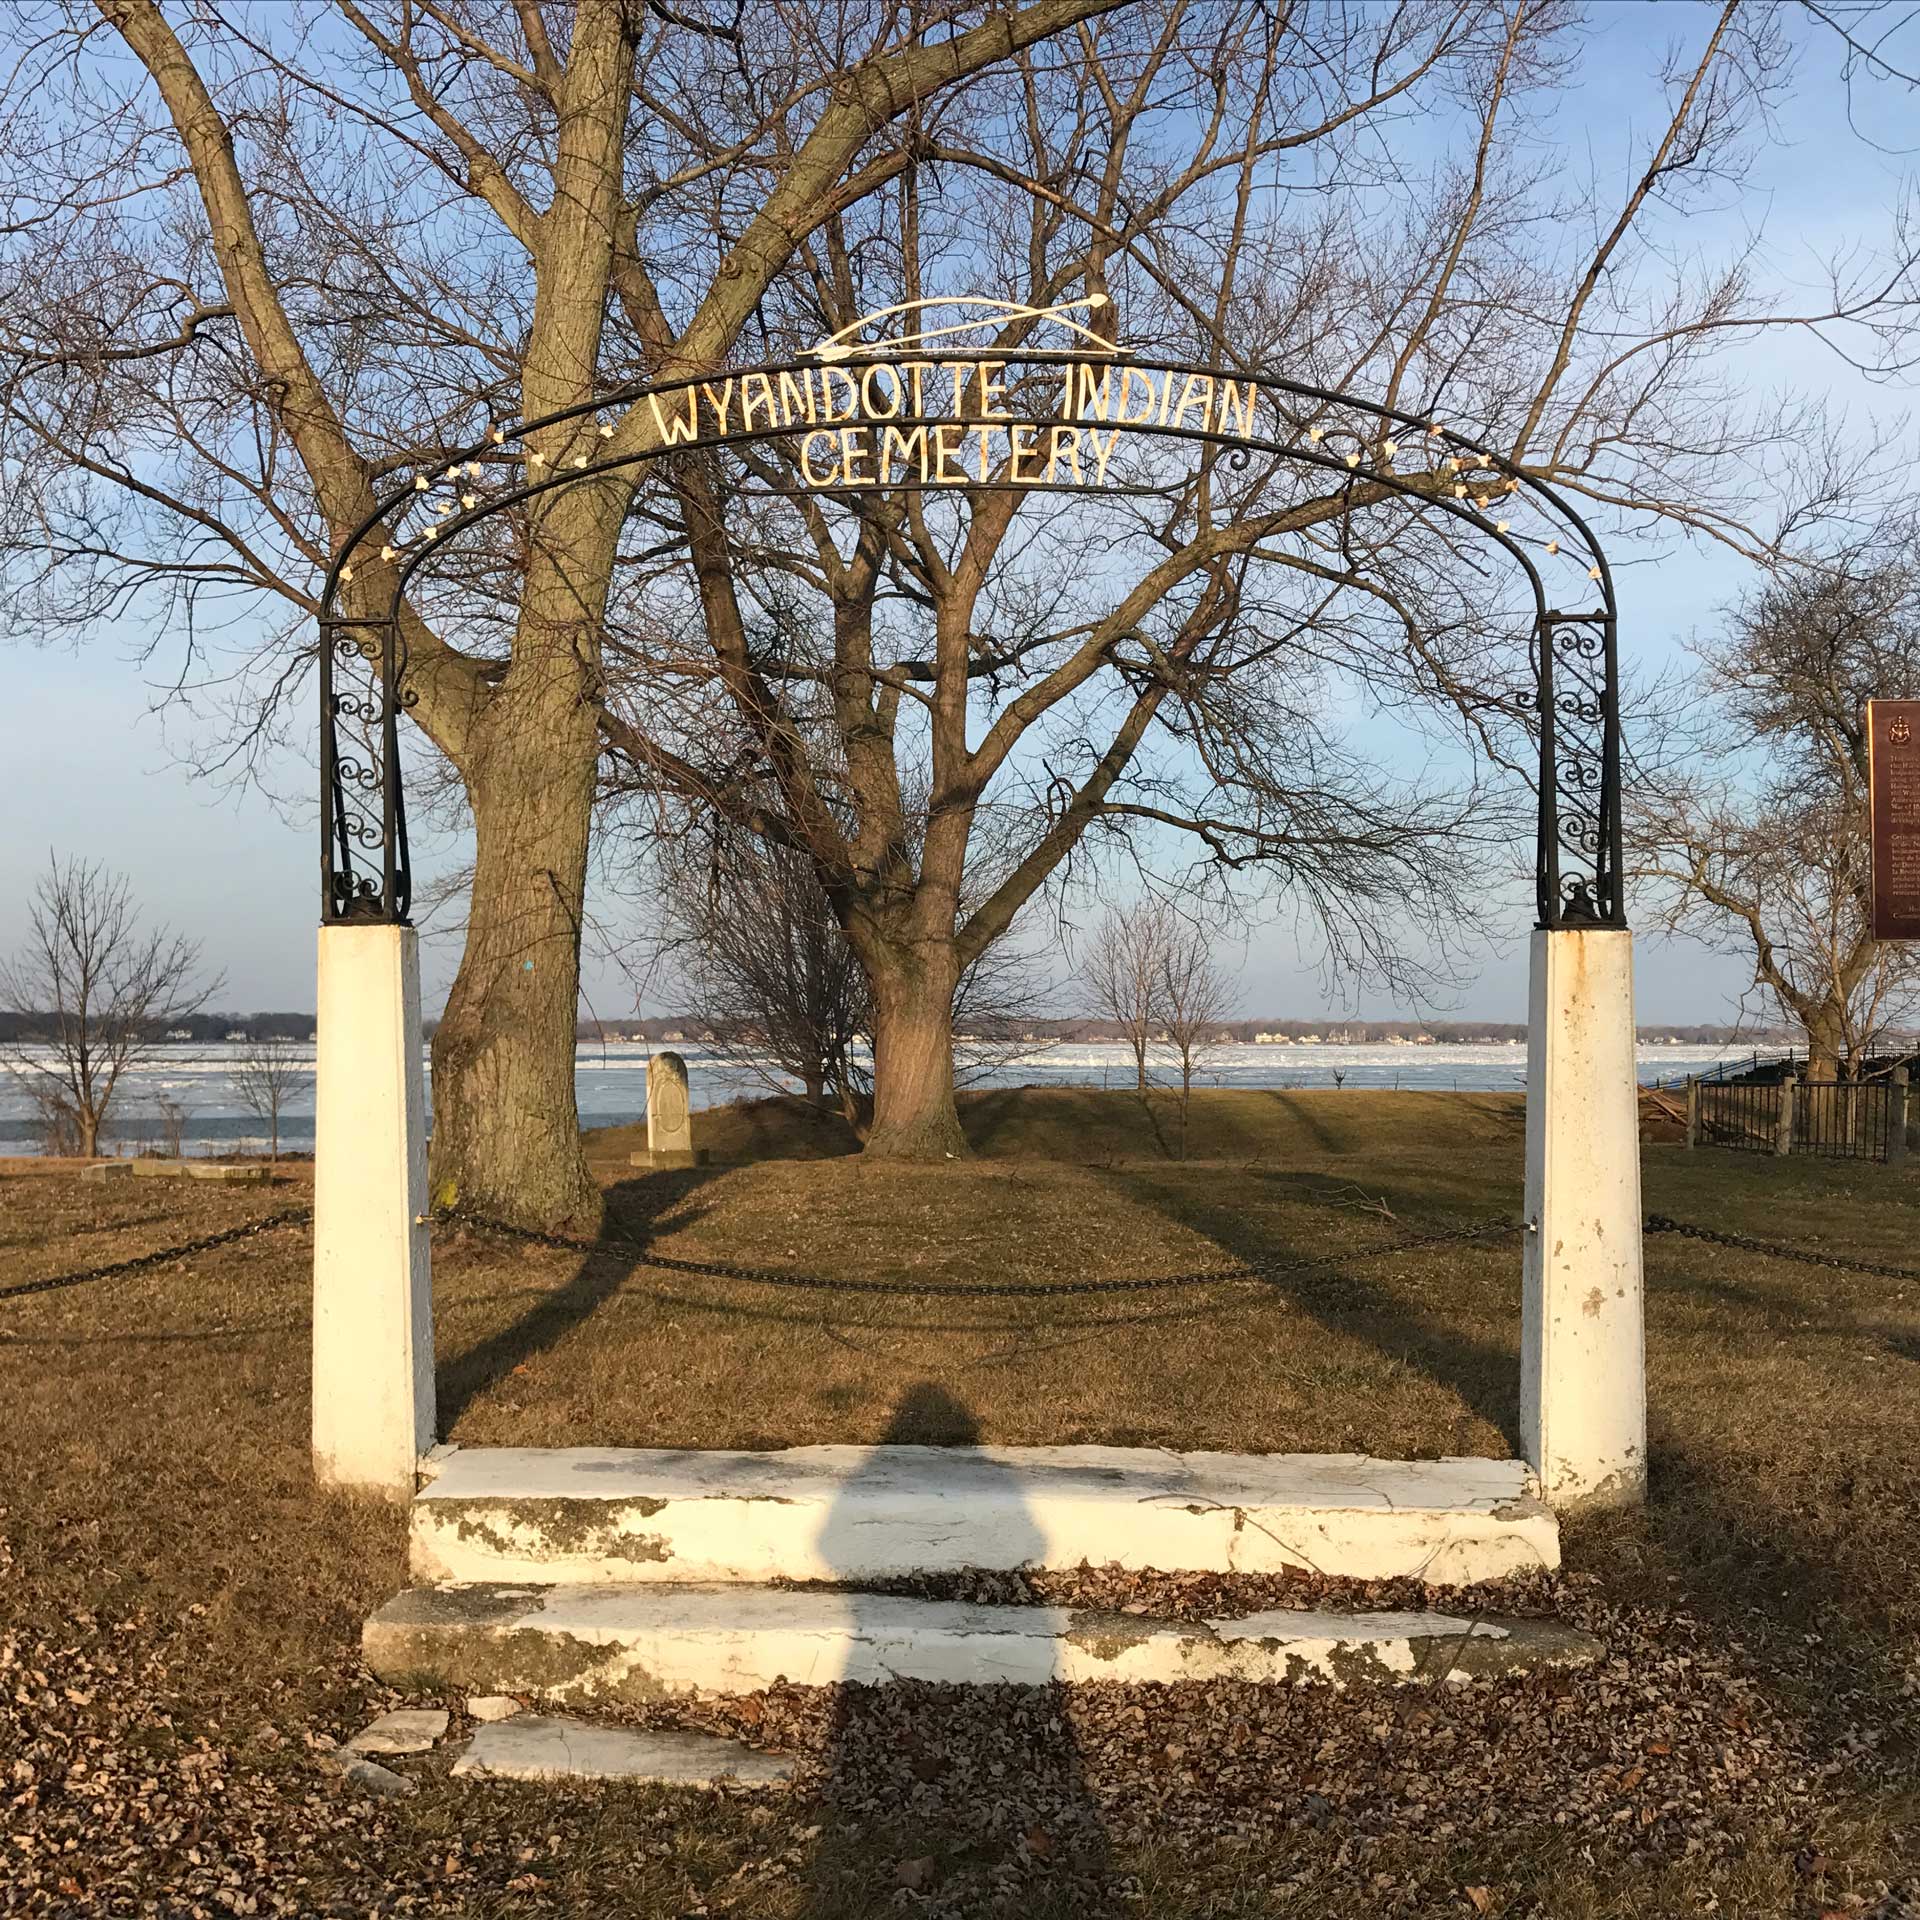 Wyandotte cemetery